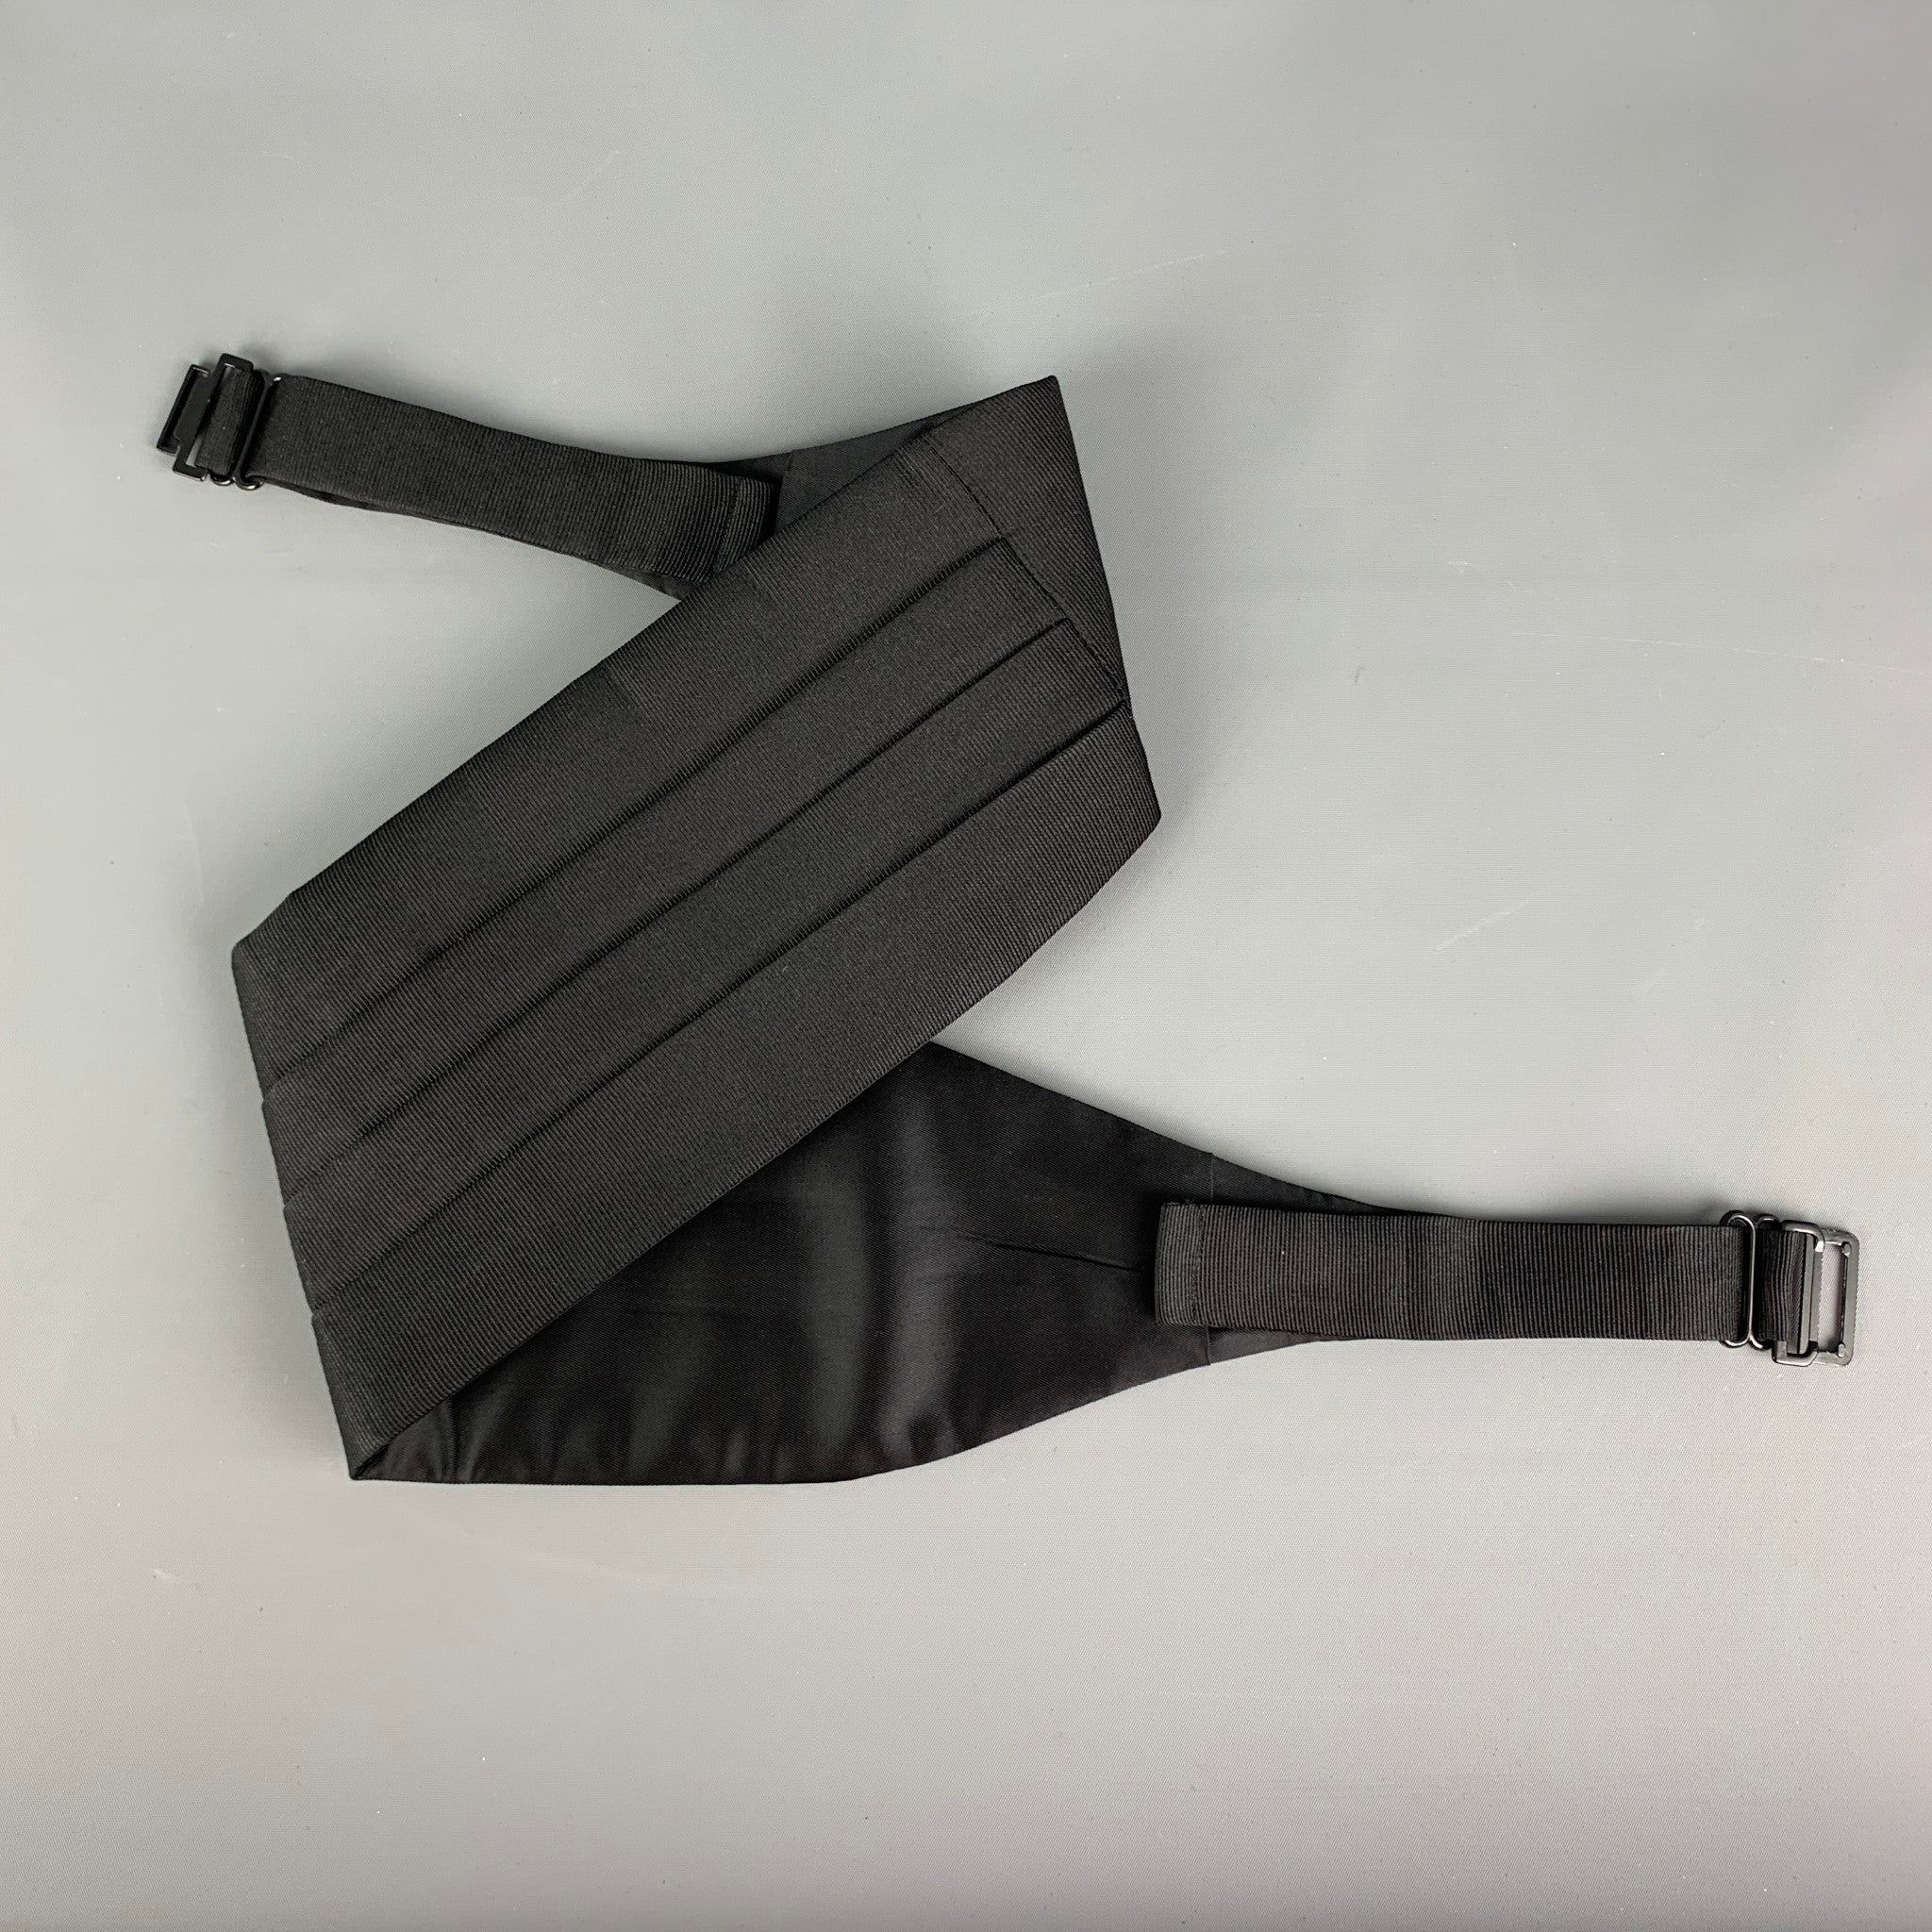 NEIMAN MARCUS Size L Black Merino Wool Blend Zip Up Vest (Indoor) – Sui  Generis Designer Consignment